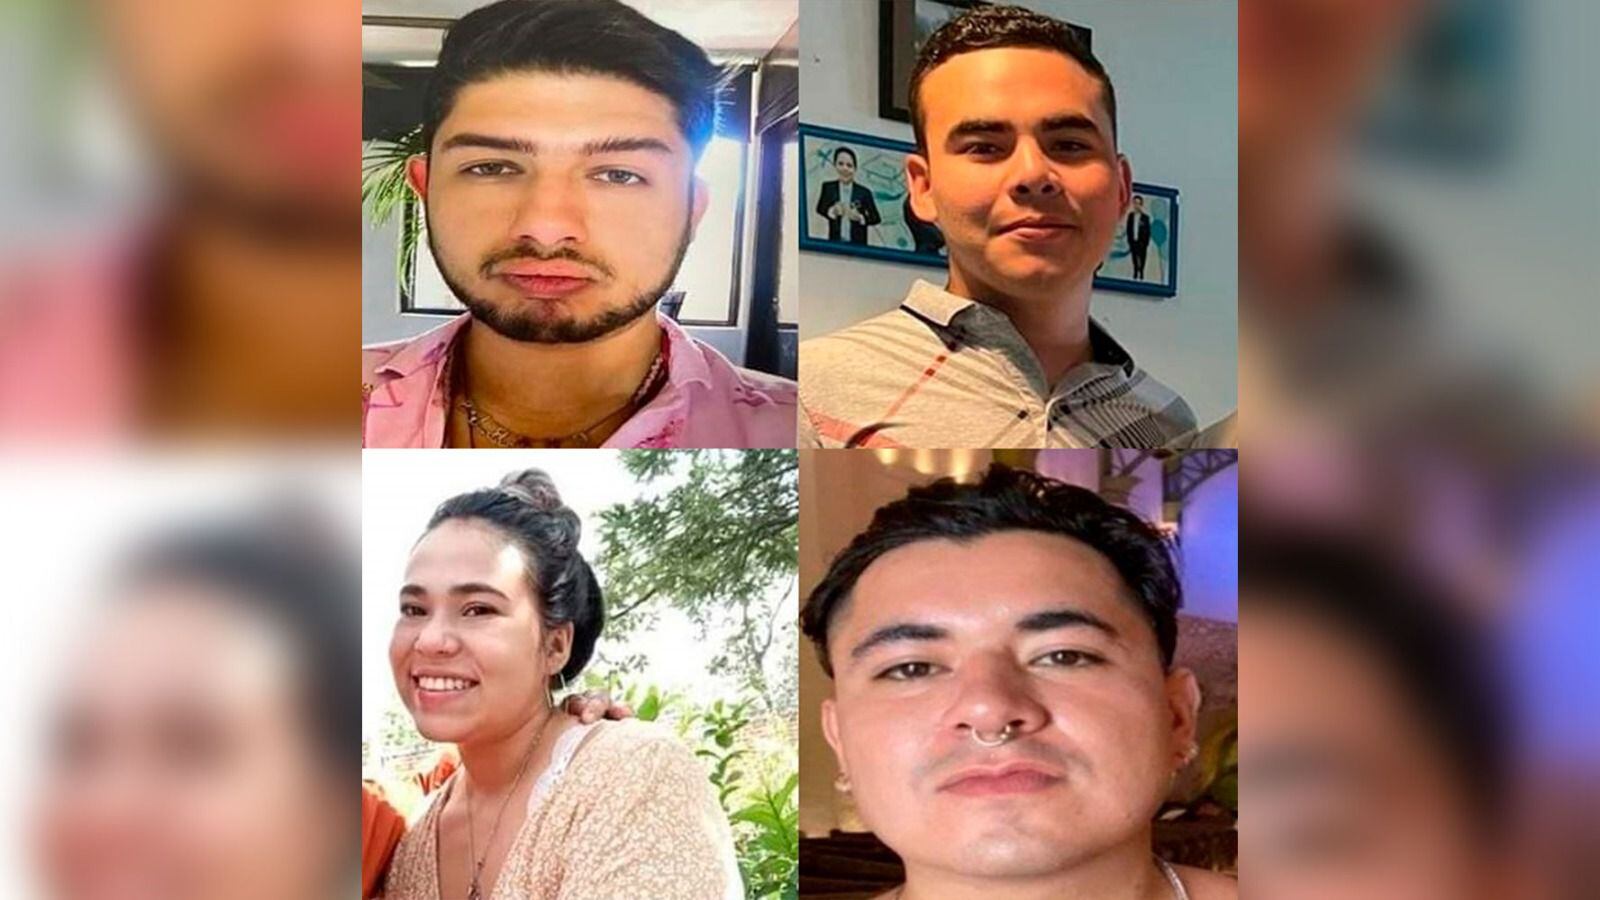 Cronología: Así ha sido el caso de 7 jóvenes desaparecidos de un call center en Zapopan